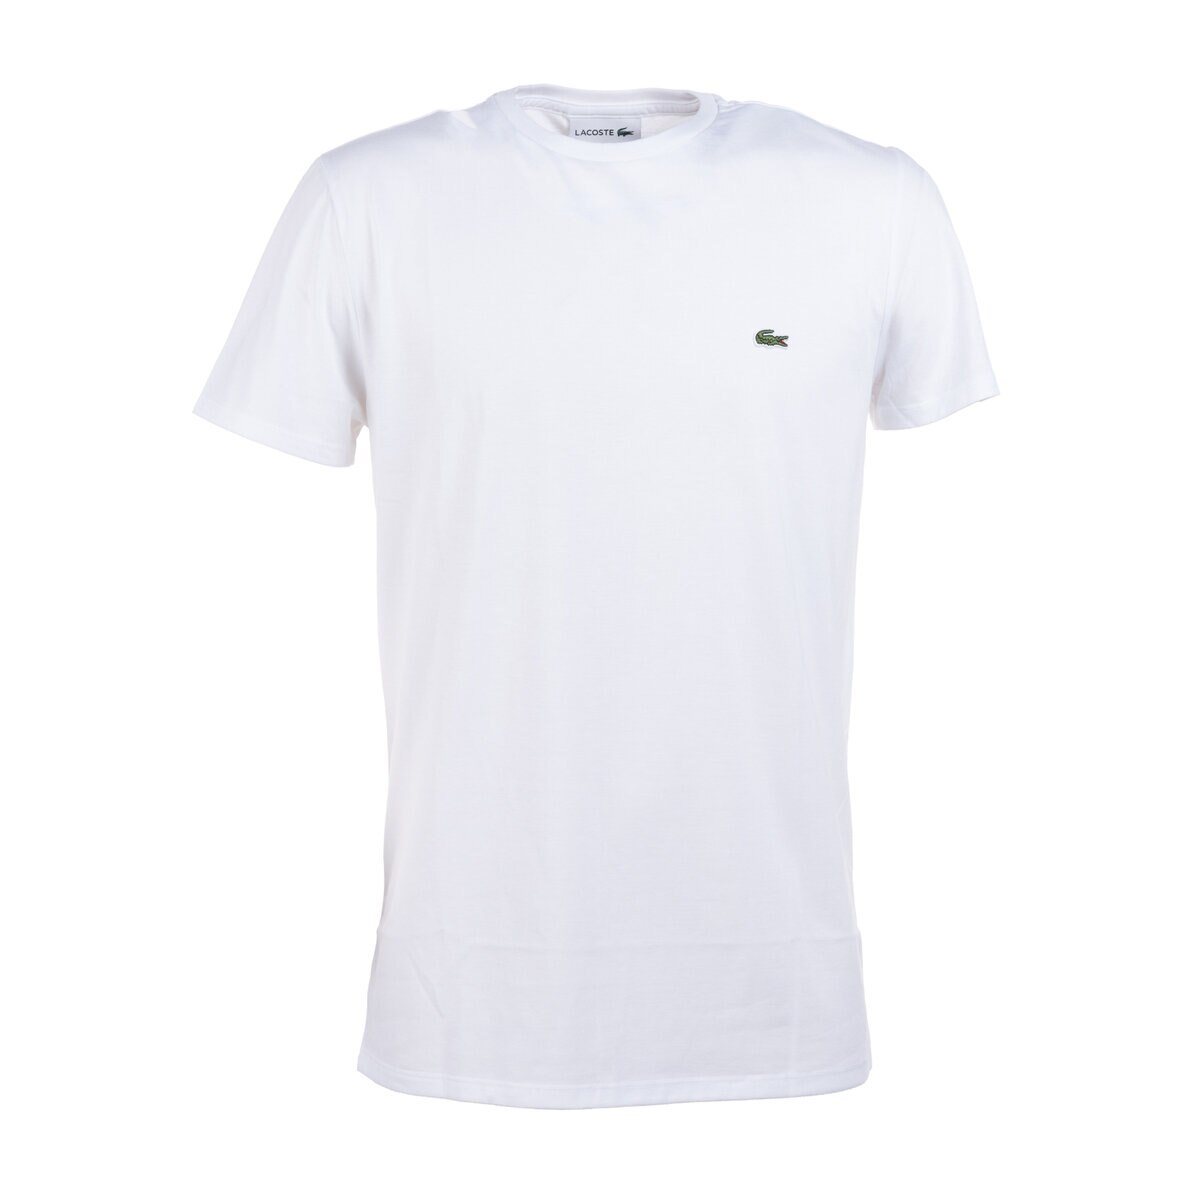 ラコステ メンズ クルーネック 半袖Tシャツ ピマコットン ホワイト 3(S)